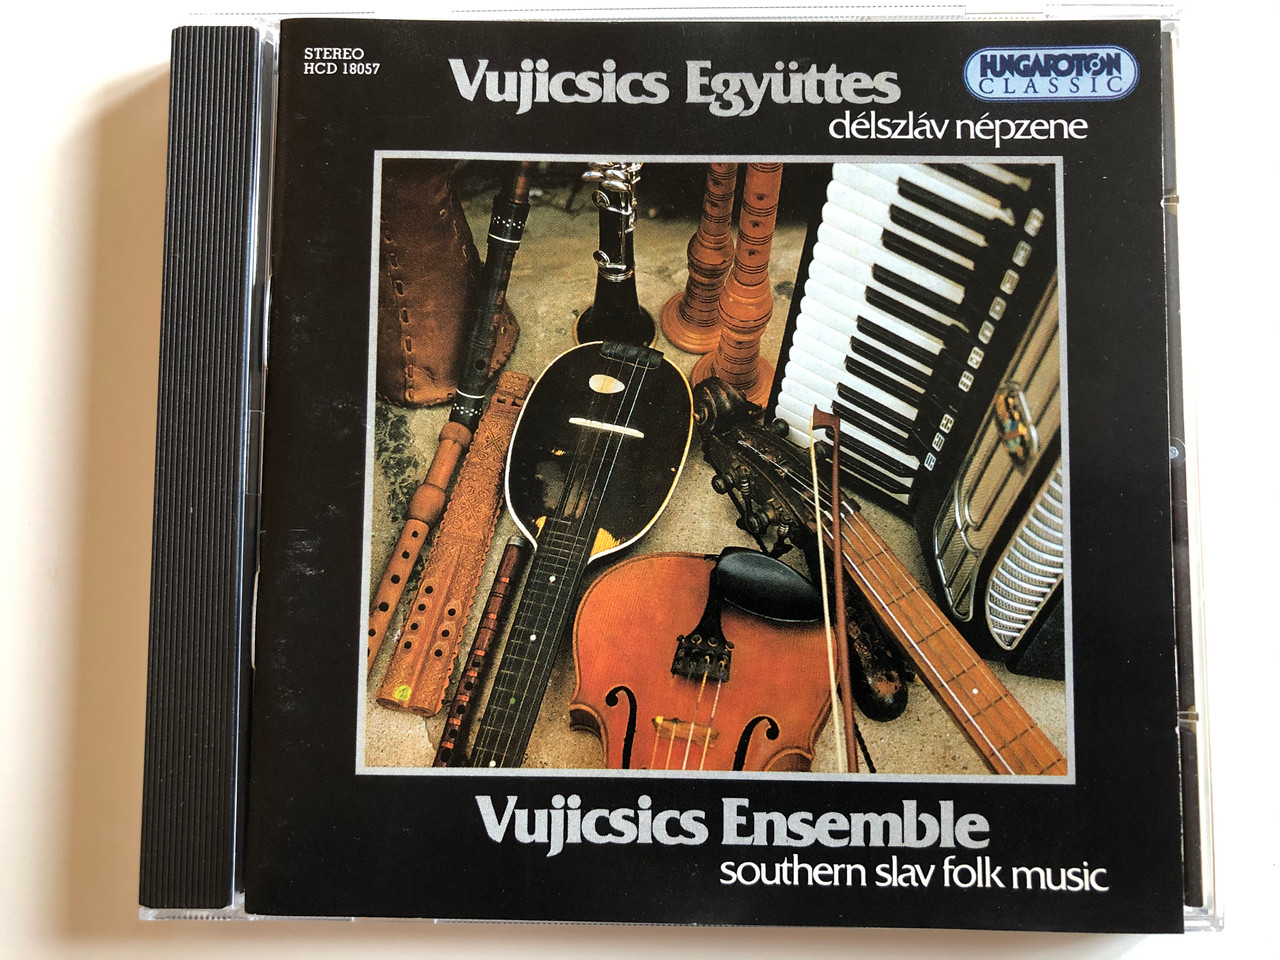 Vujicsics Ensemble - Southern Slav Folk Music (Délszláv Népzene